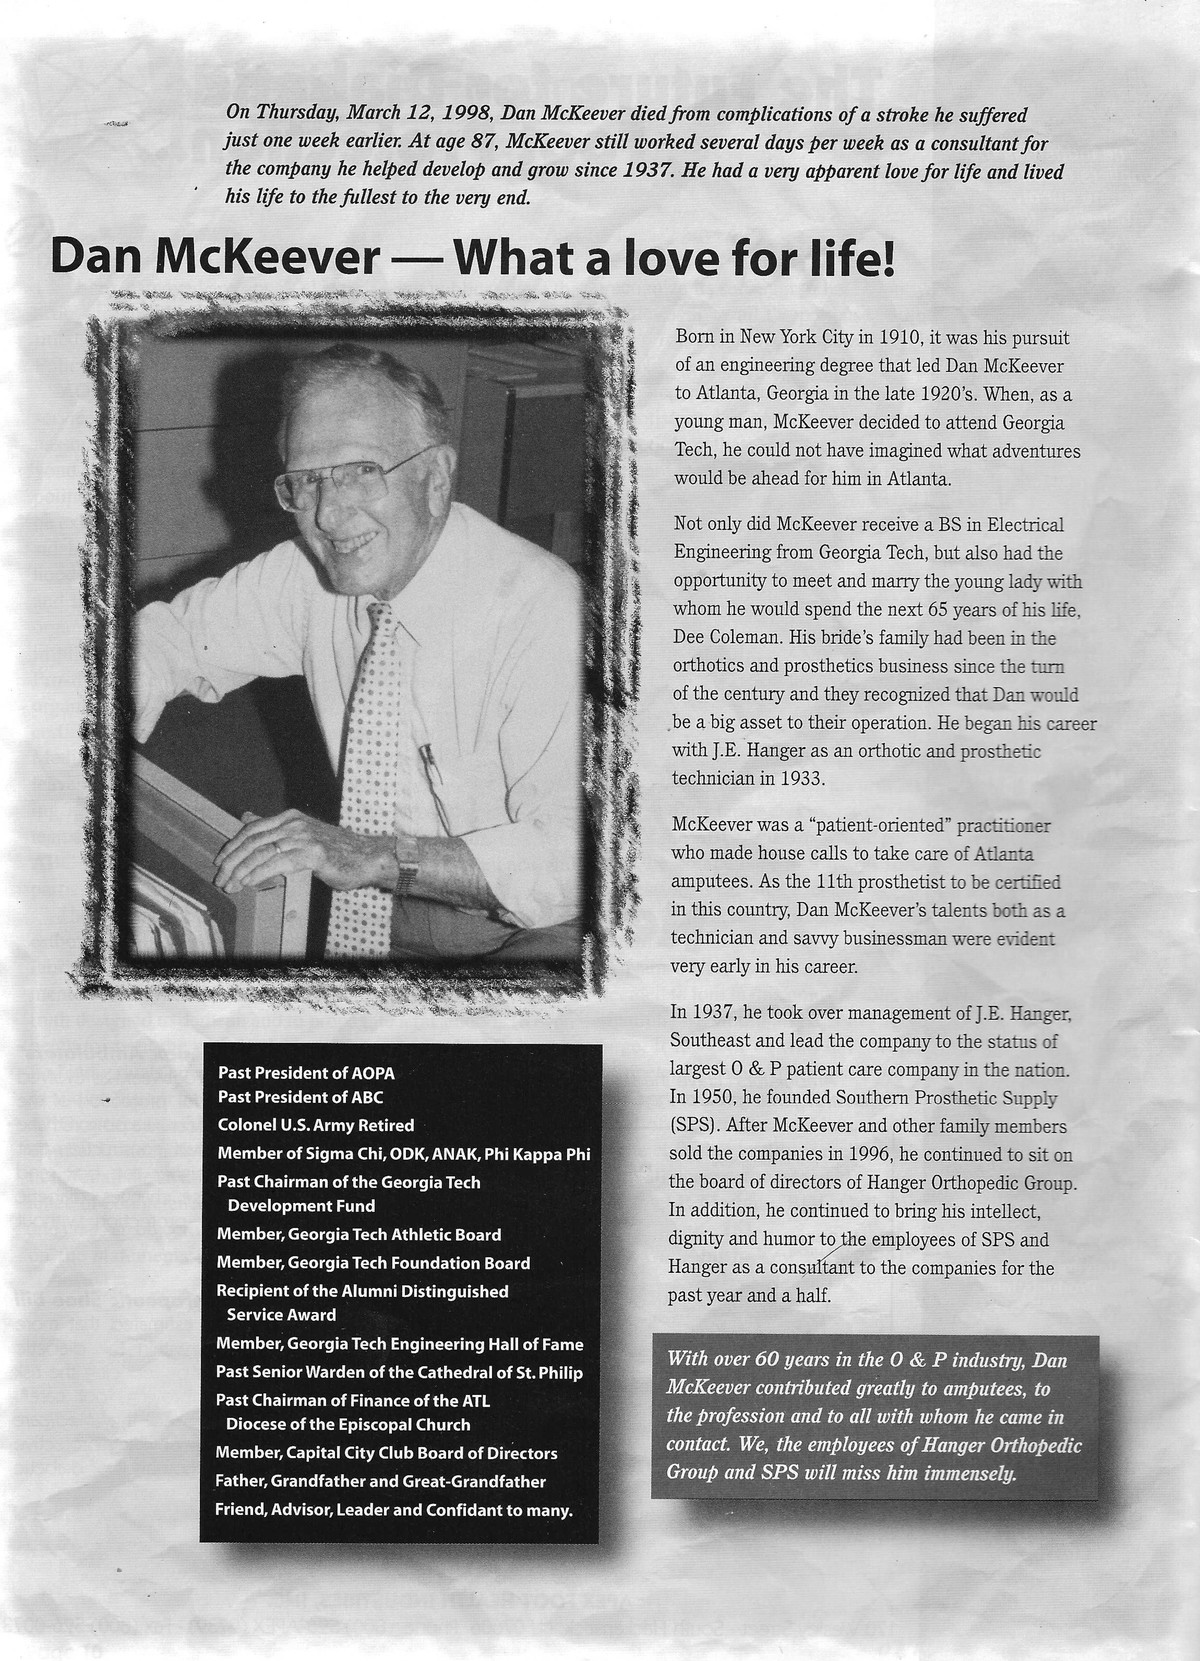 dan-mckeever-love-for-life